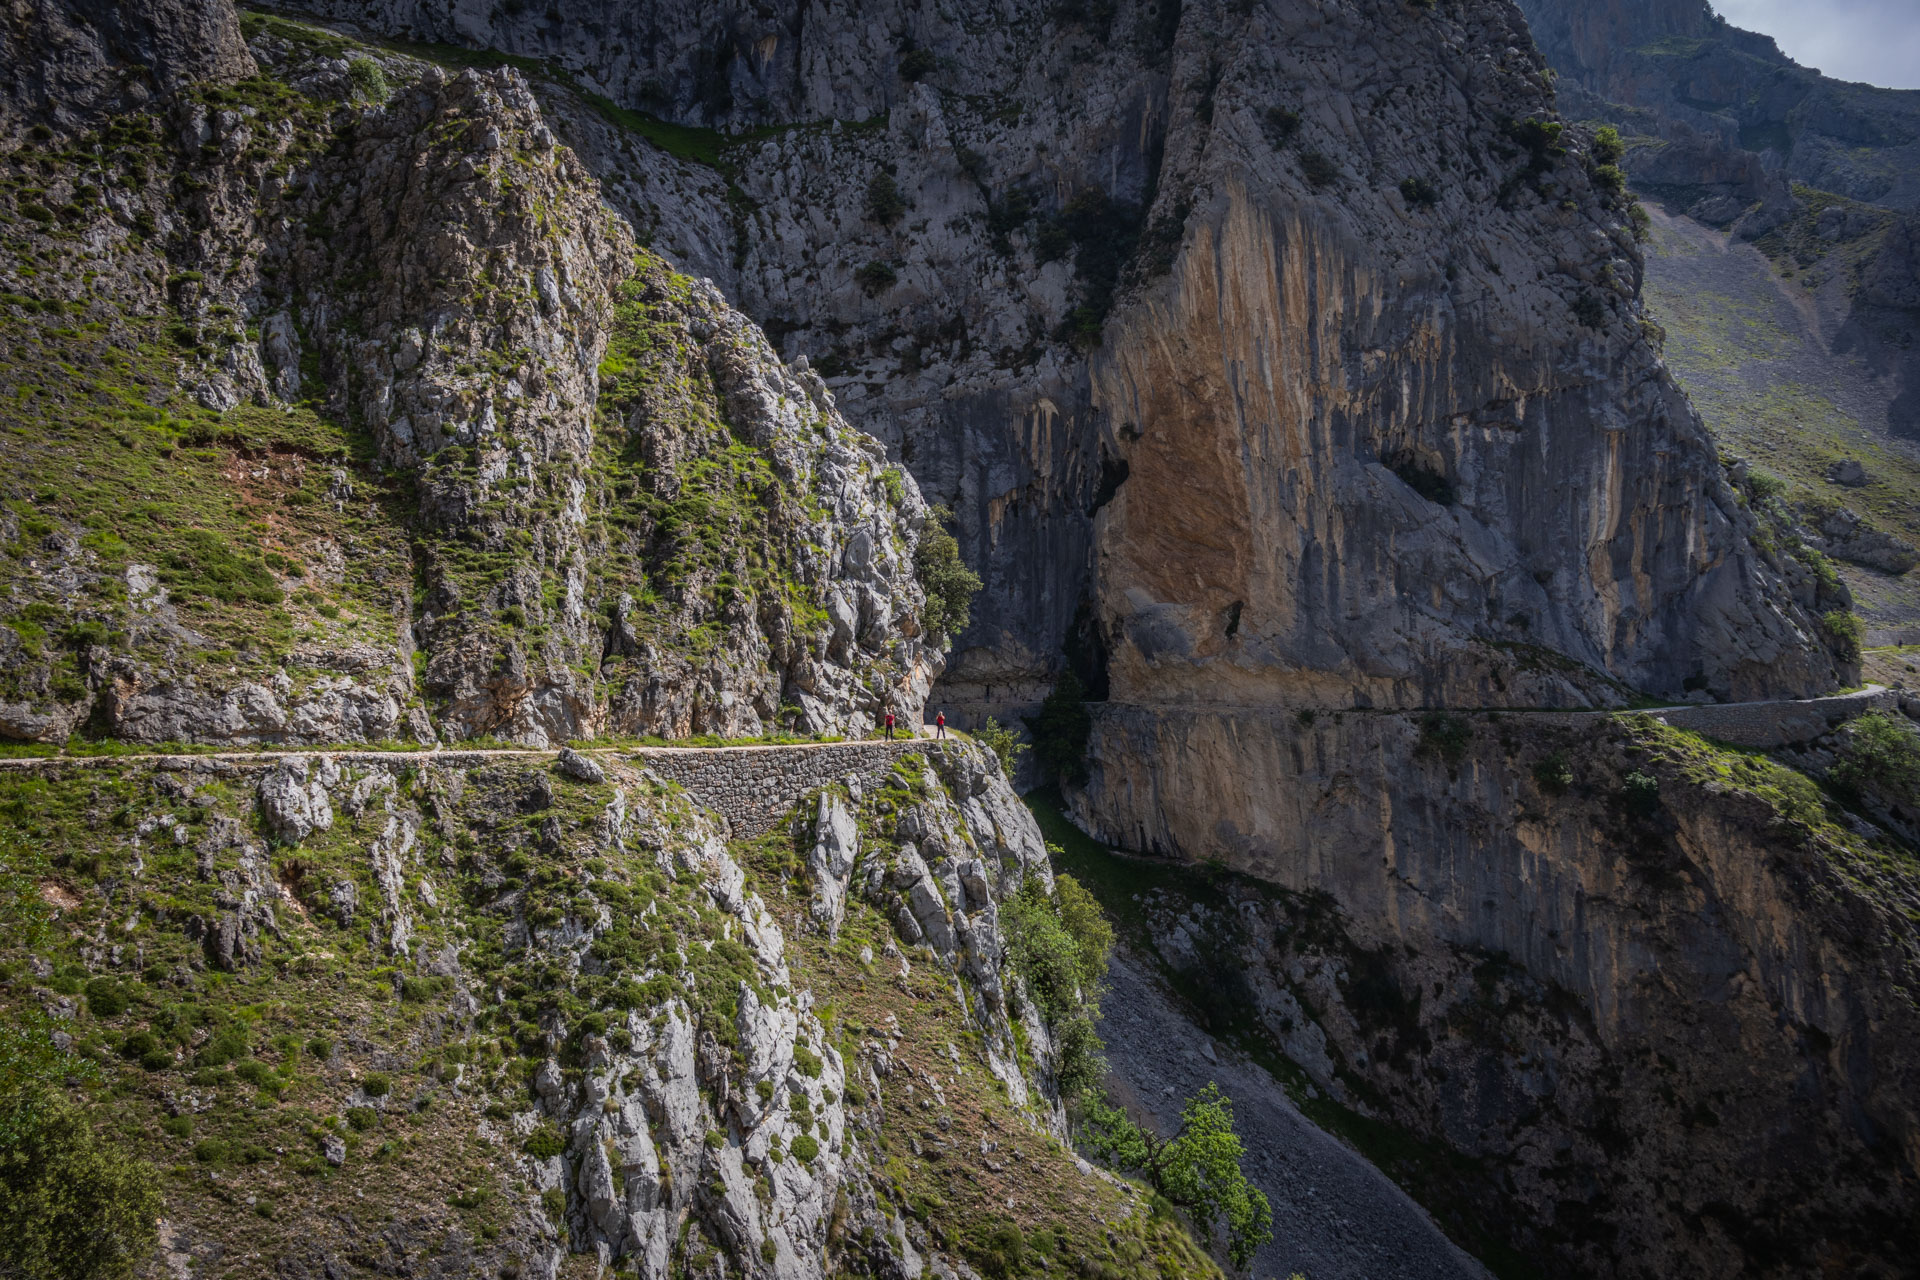 Wandelpad tegen de rotswand tijdens de Ruta del Cares hike in Spanje, waar Hugo in de verte op het pad staat.